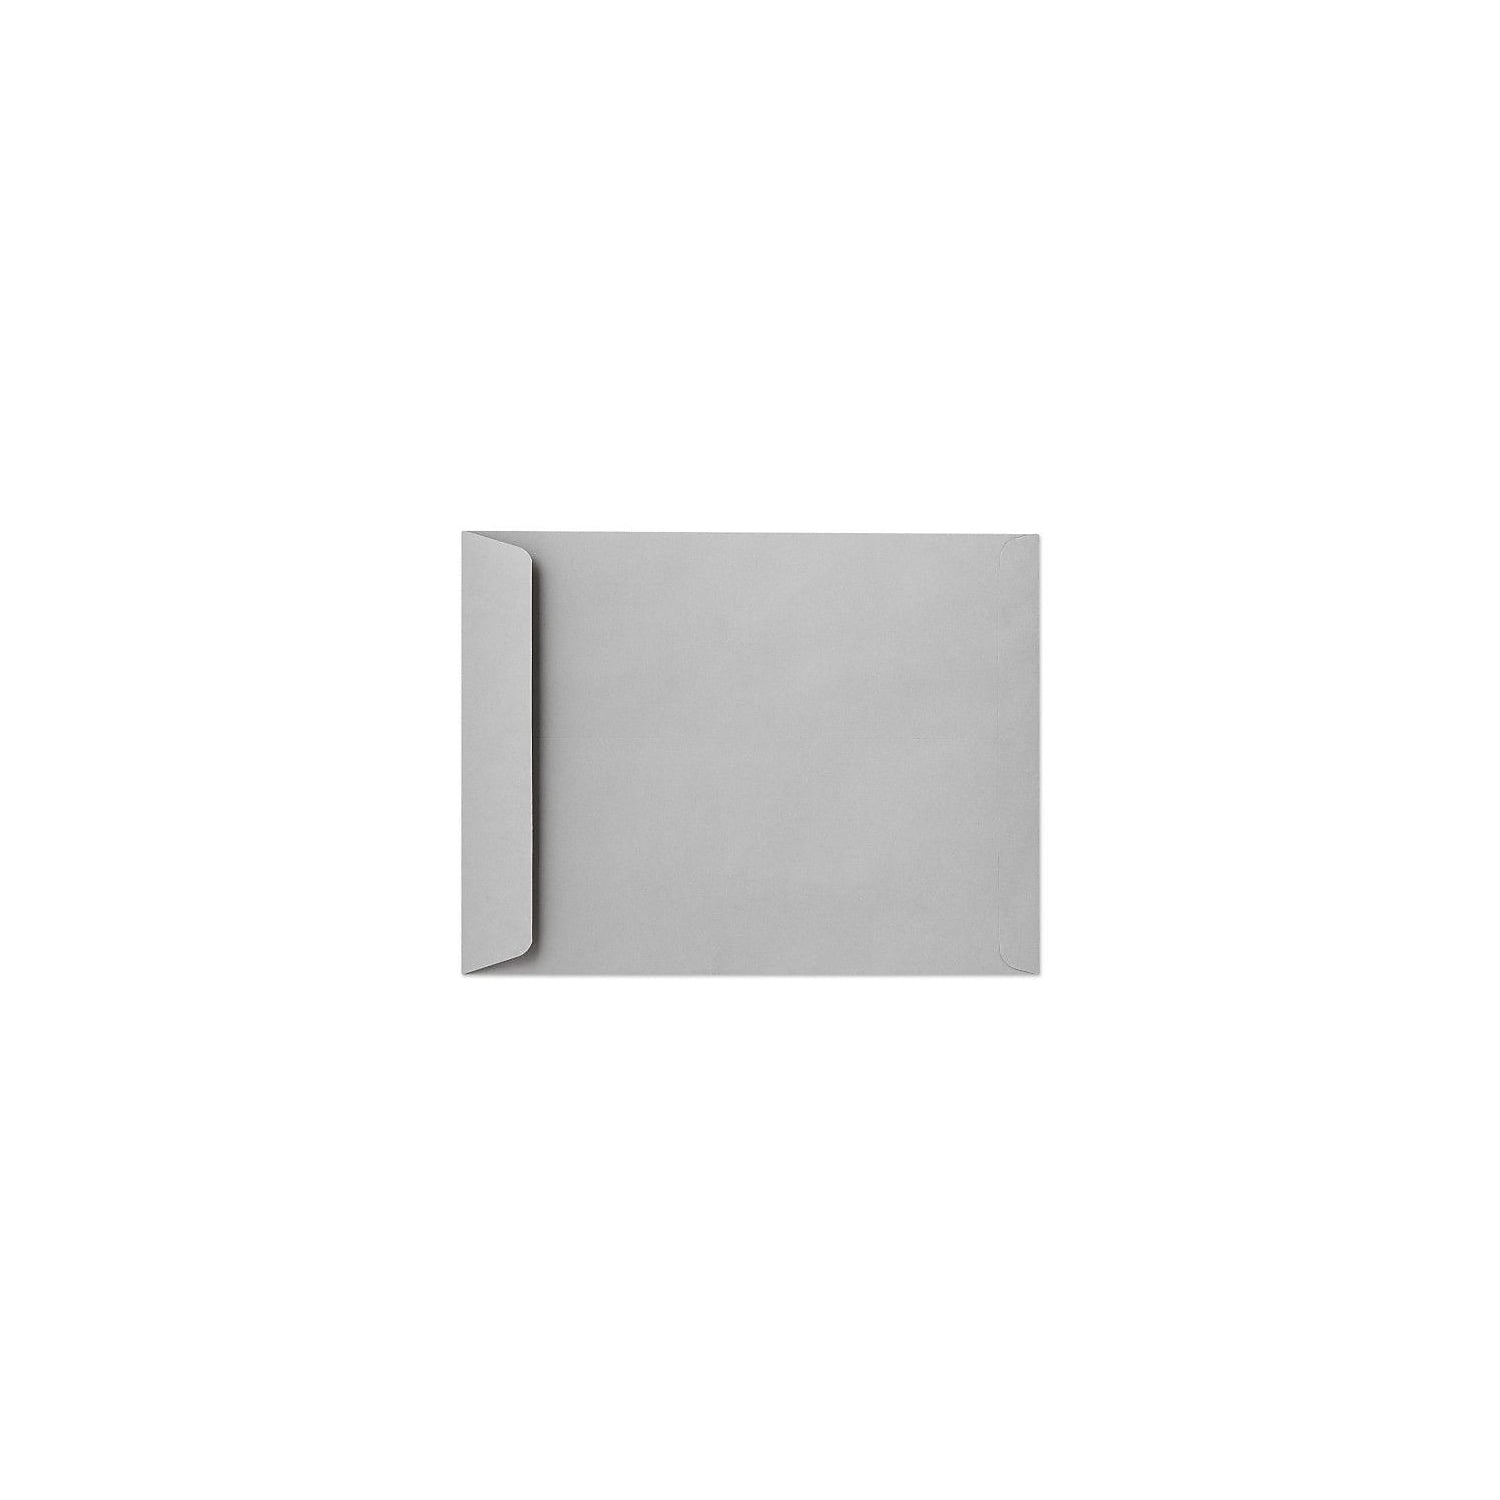 Bright White Pack of 50 28lb 13 x 19 Jumbo Envelopes 